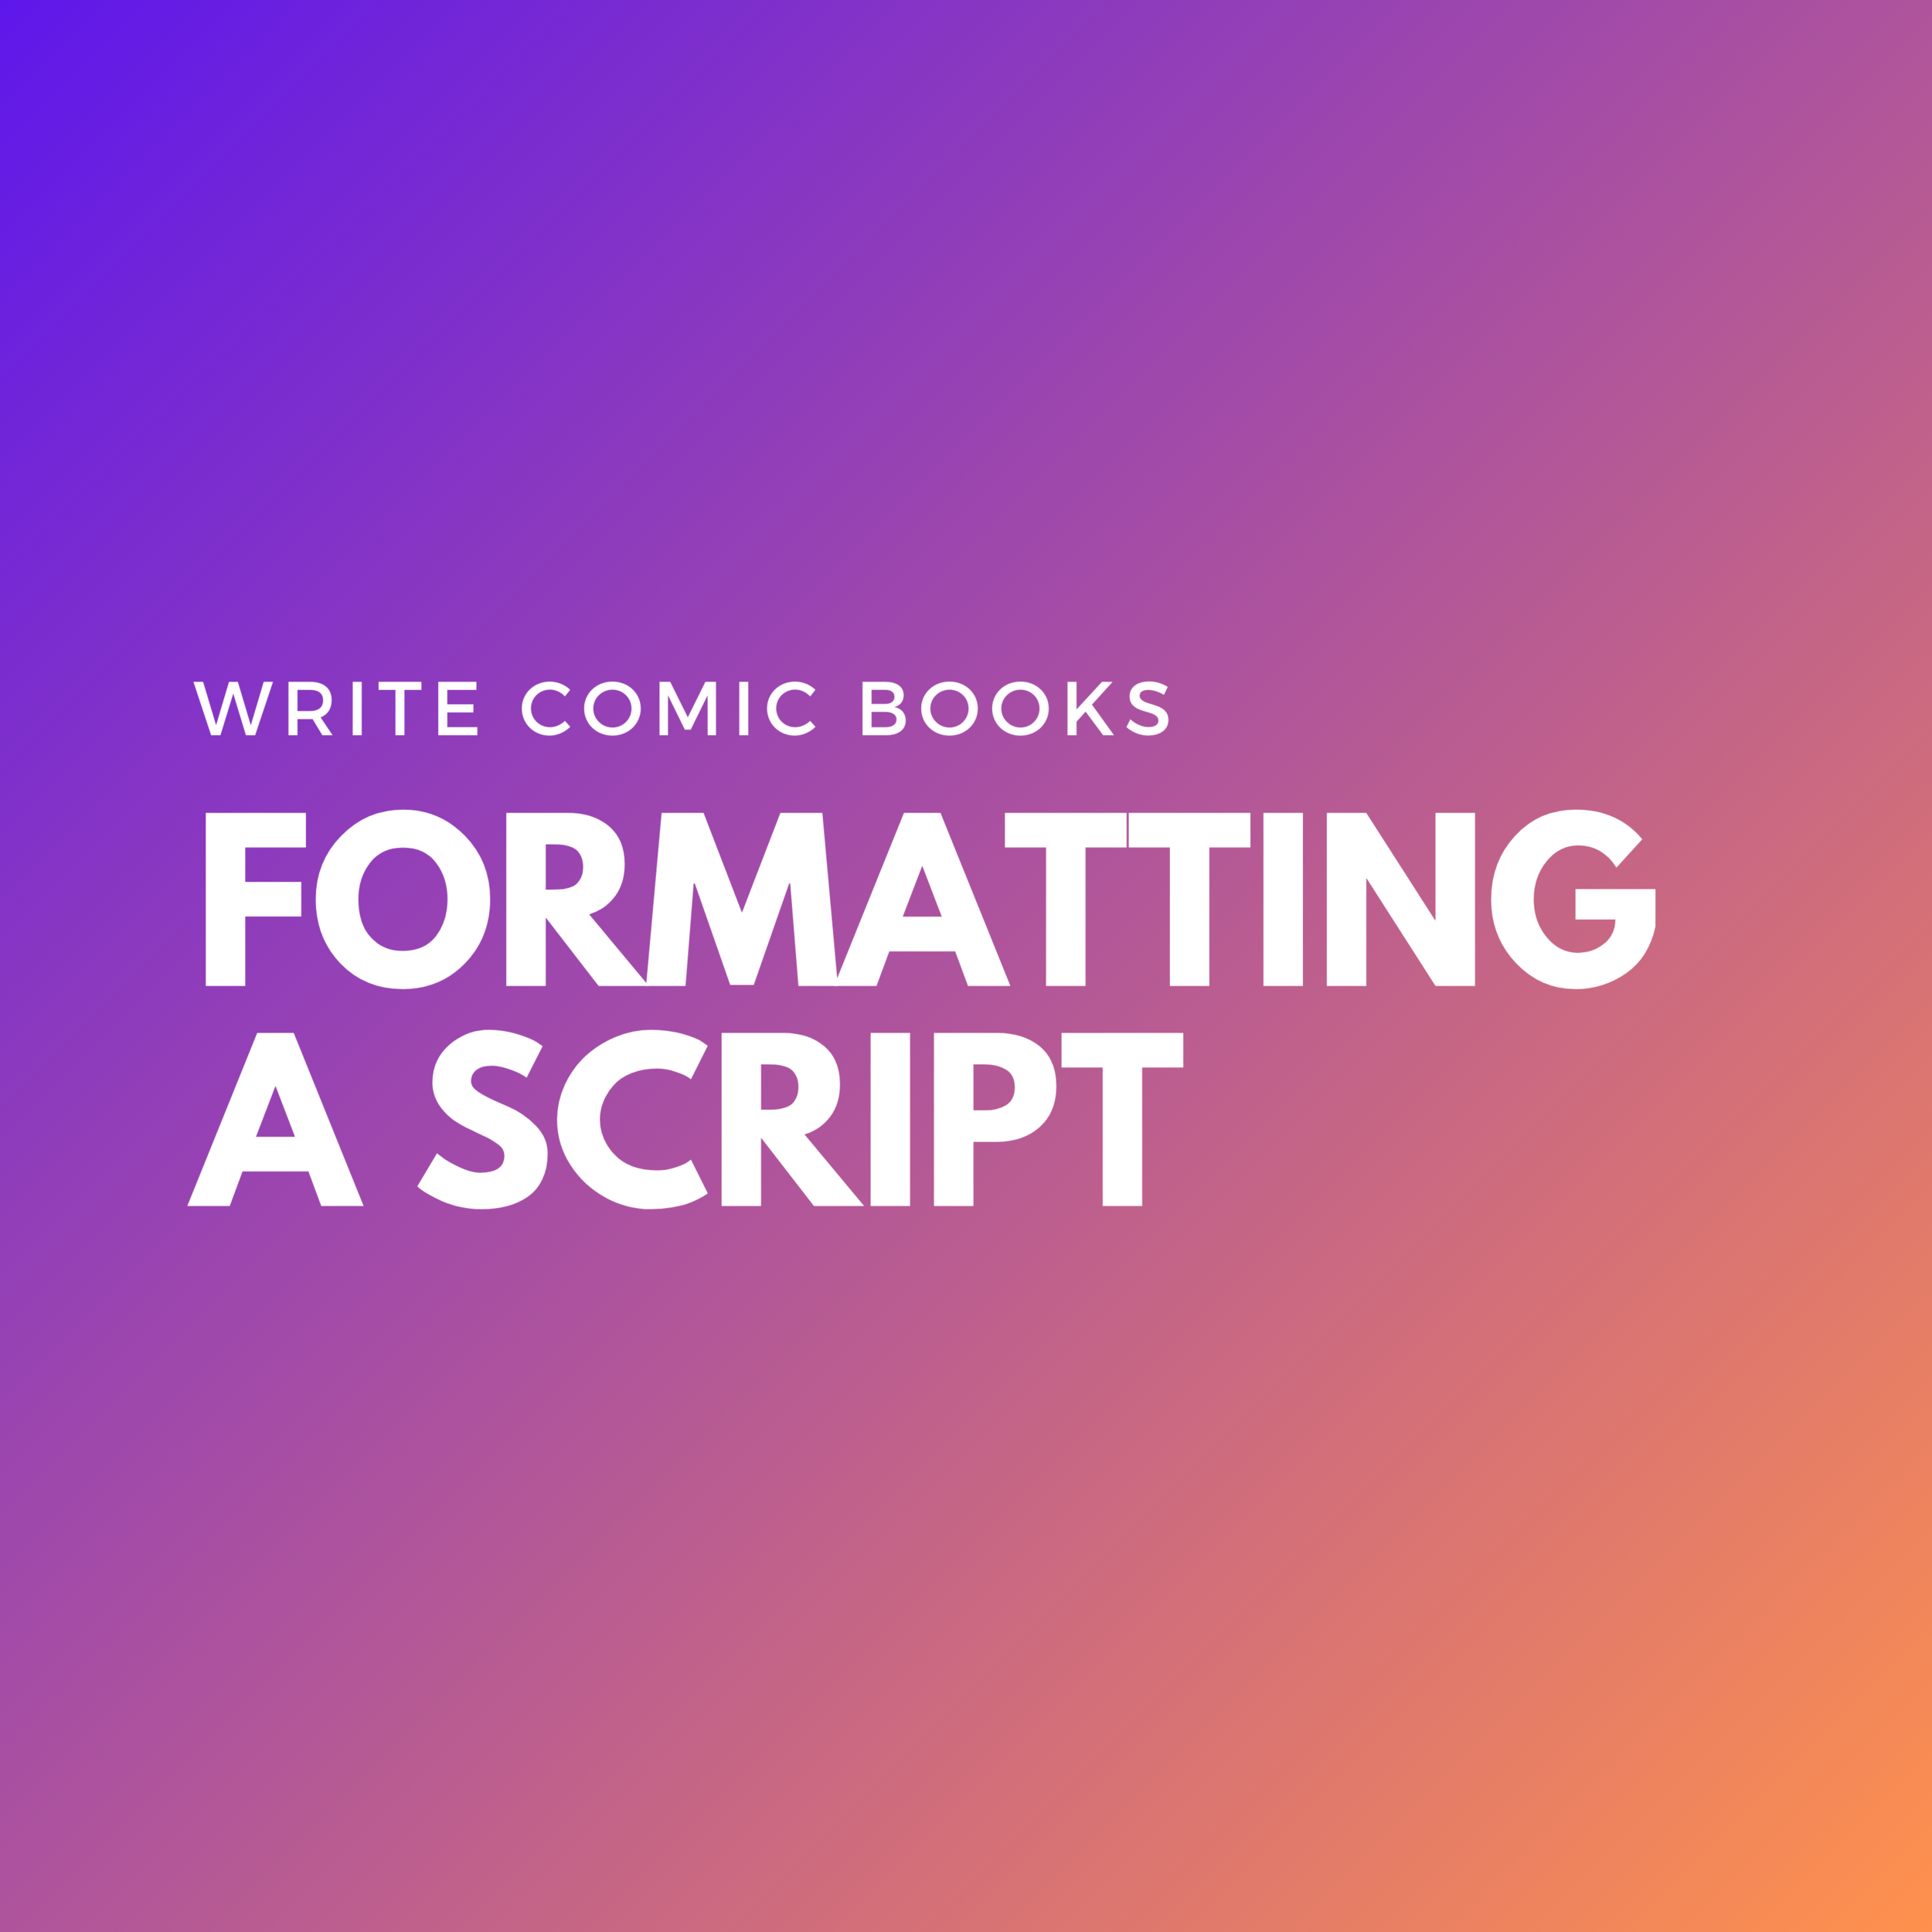 Write Comic Books: 4 Tips for Formatting a Comic Book Script